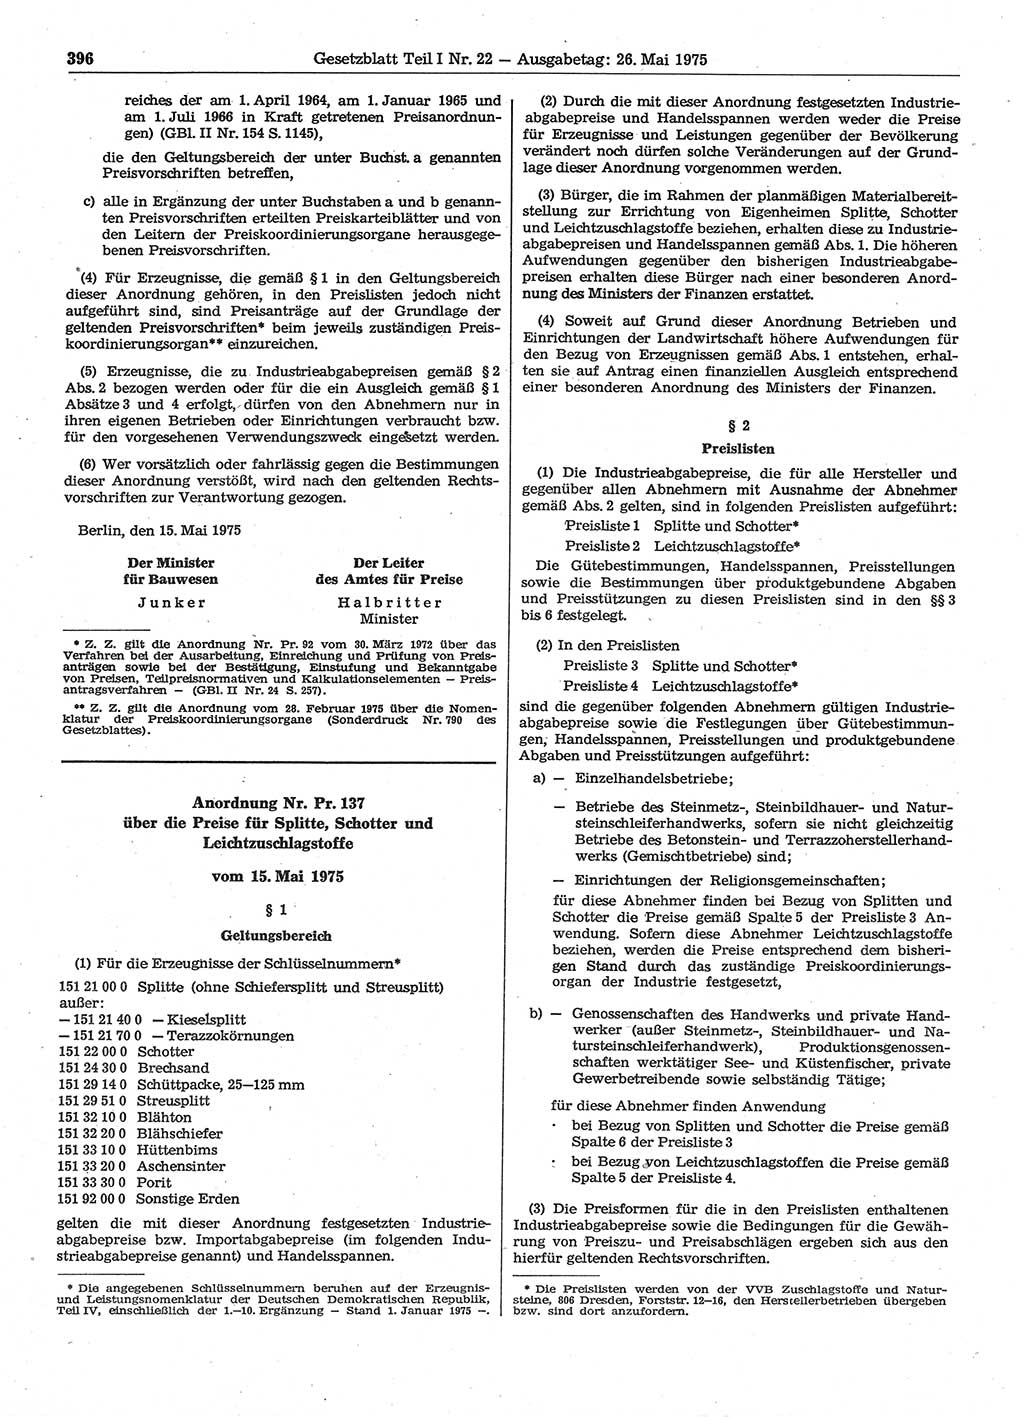 Gesetzblatt (GBl.) der Deutschen Demokratischen Republik (DDR) Teil Ⅰ 1975, Seite 396 (GBl. DDR Ⅰ 1975, S. 396)